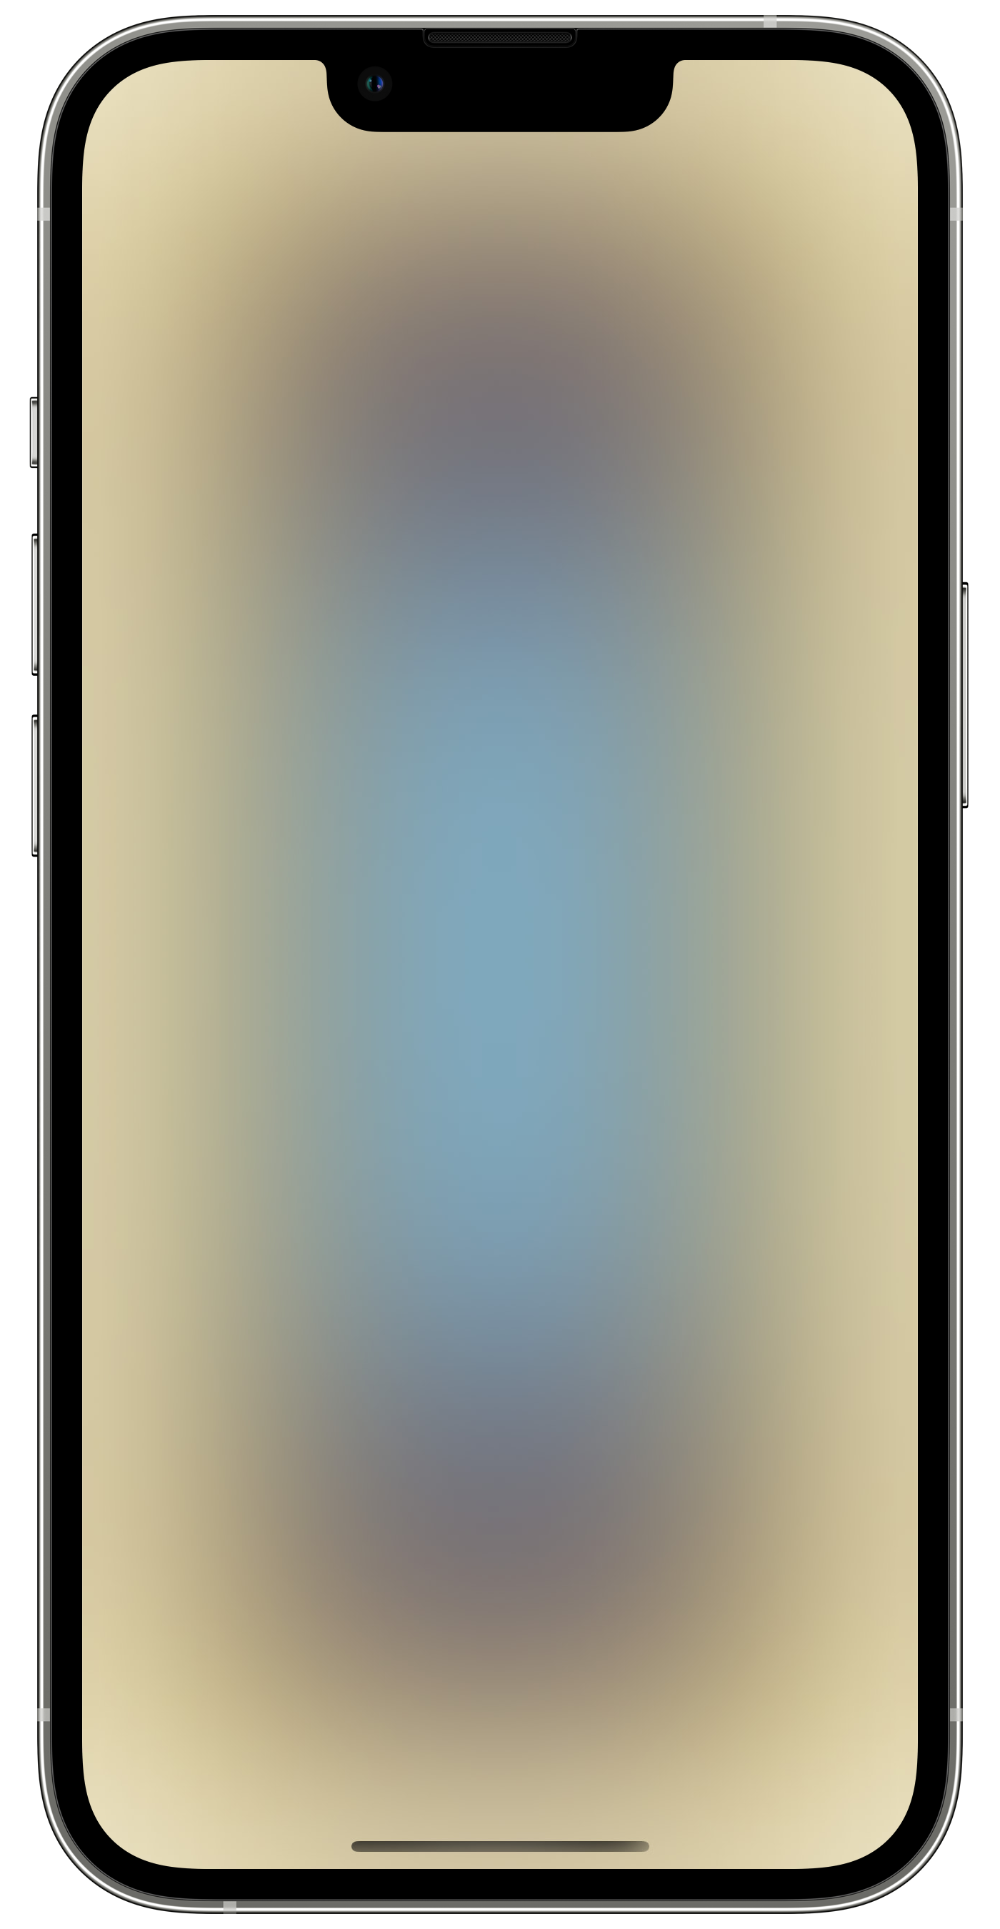 U1-MA screen